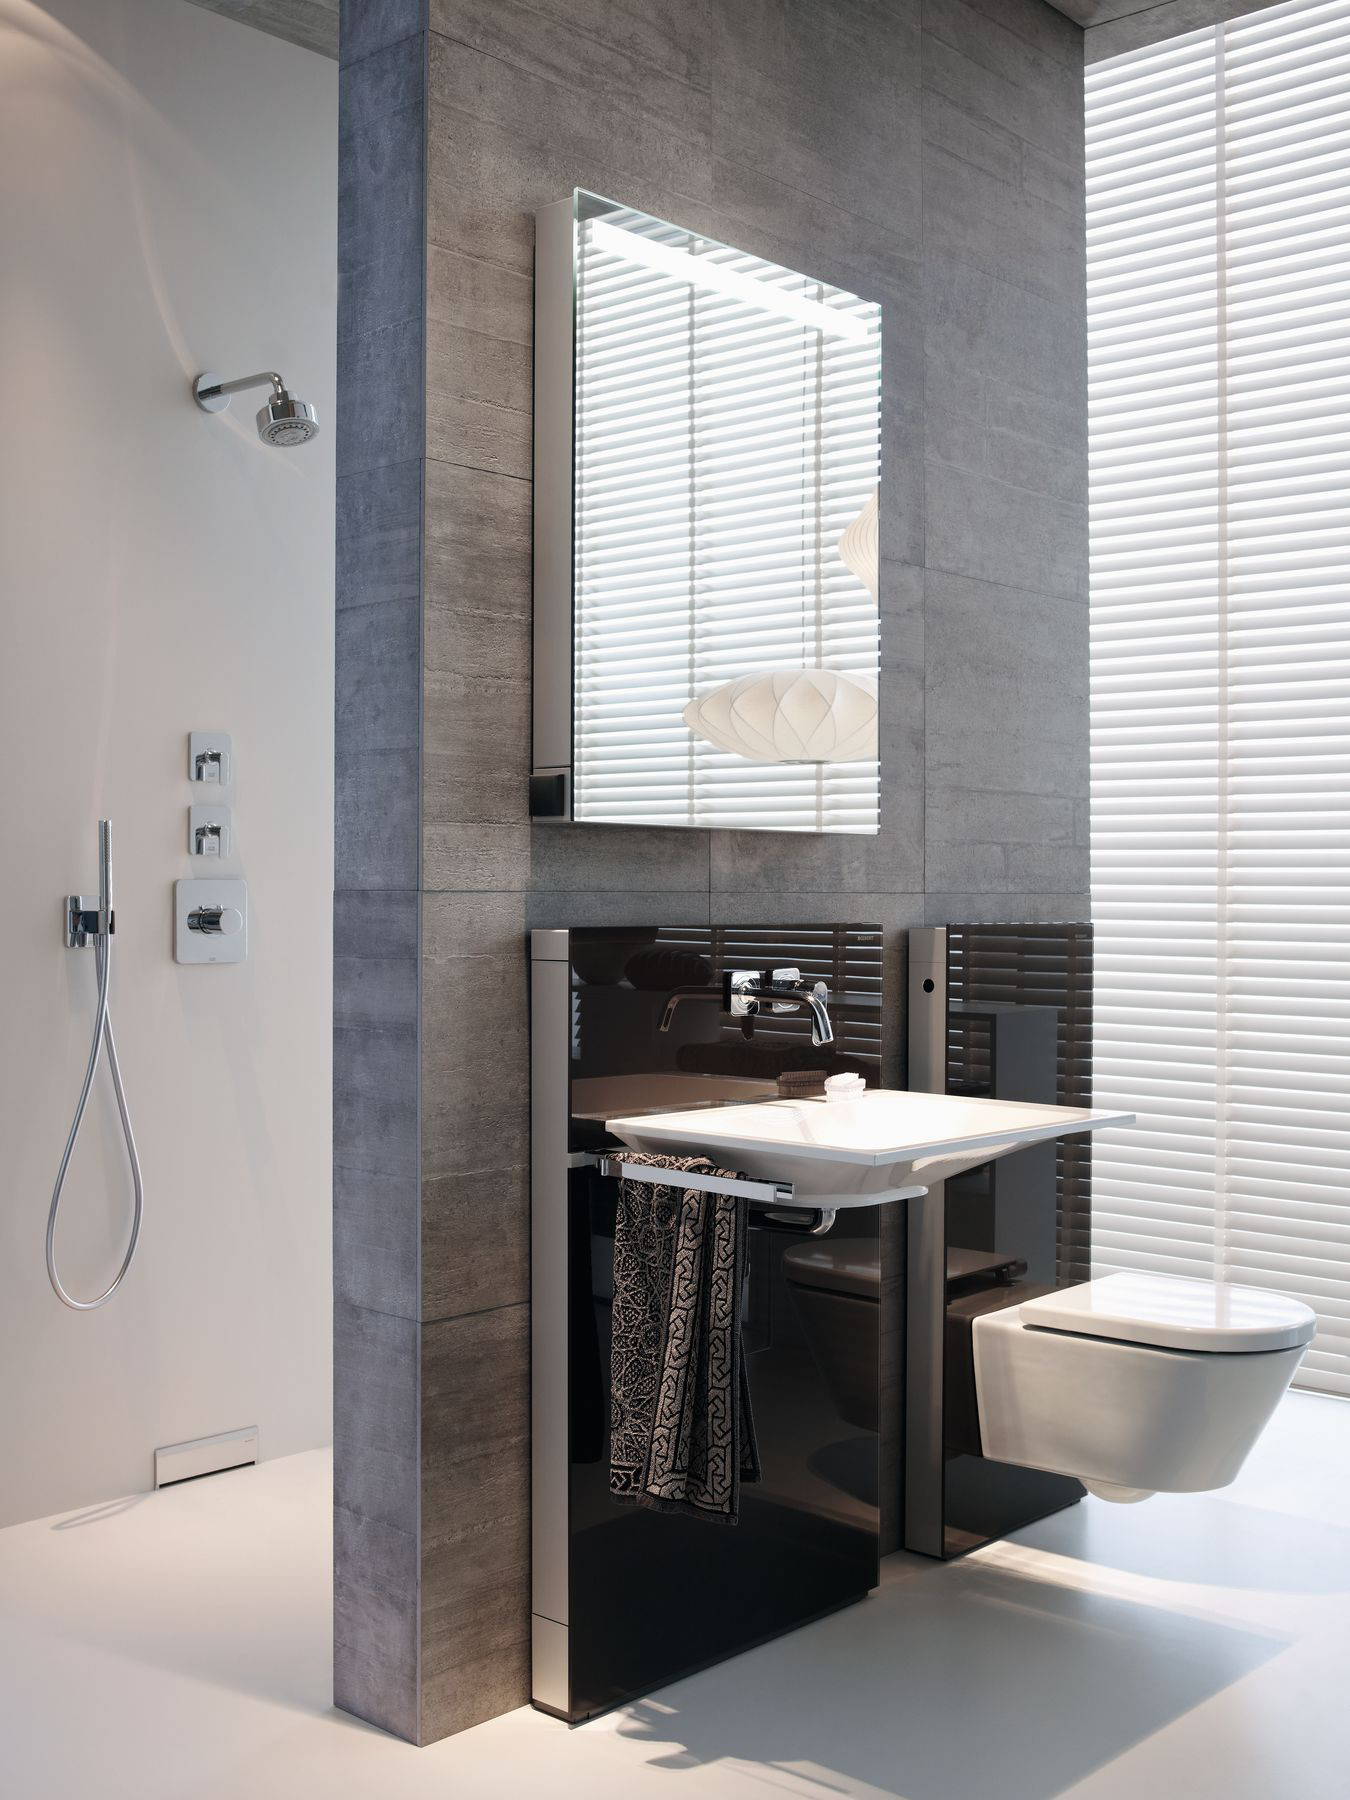 Beperkt koppeling avond Stijlvolle badkamer met designmodule voor wastafel & toilet - UW-badkamer.nl